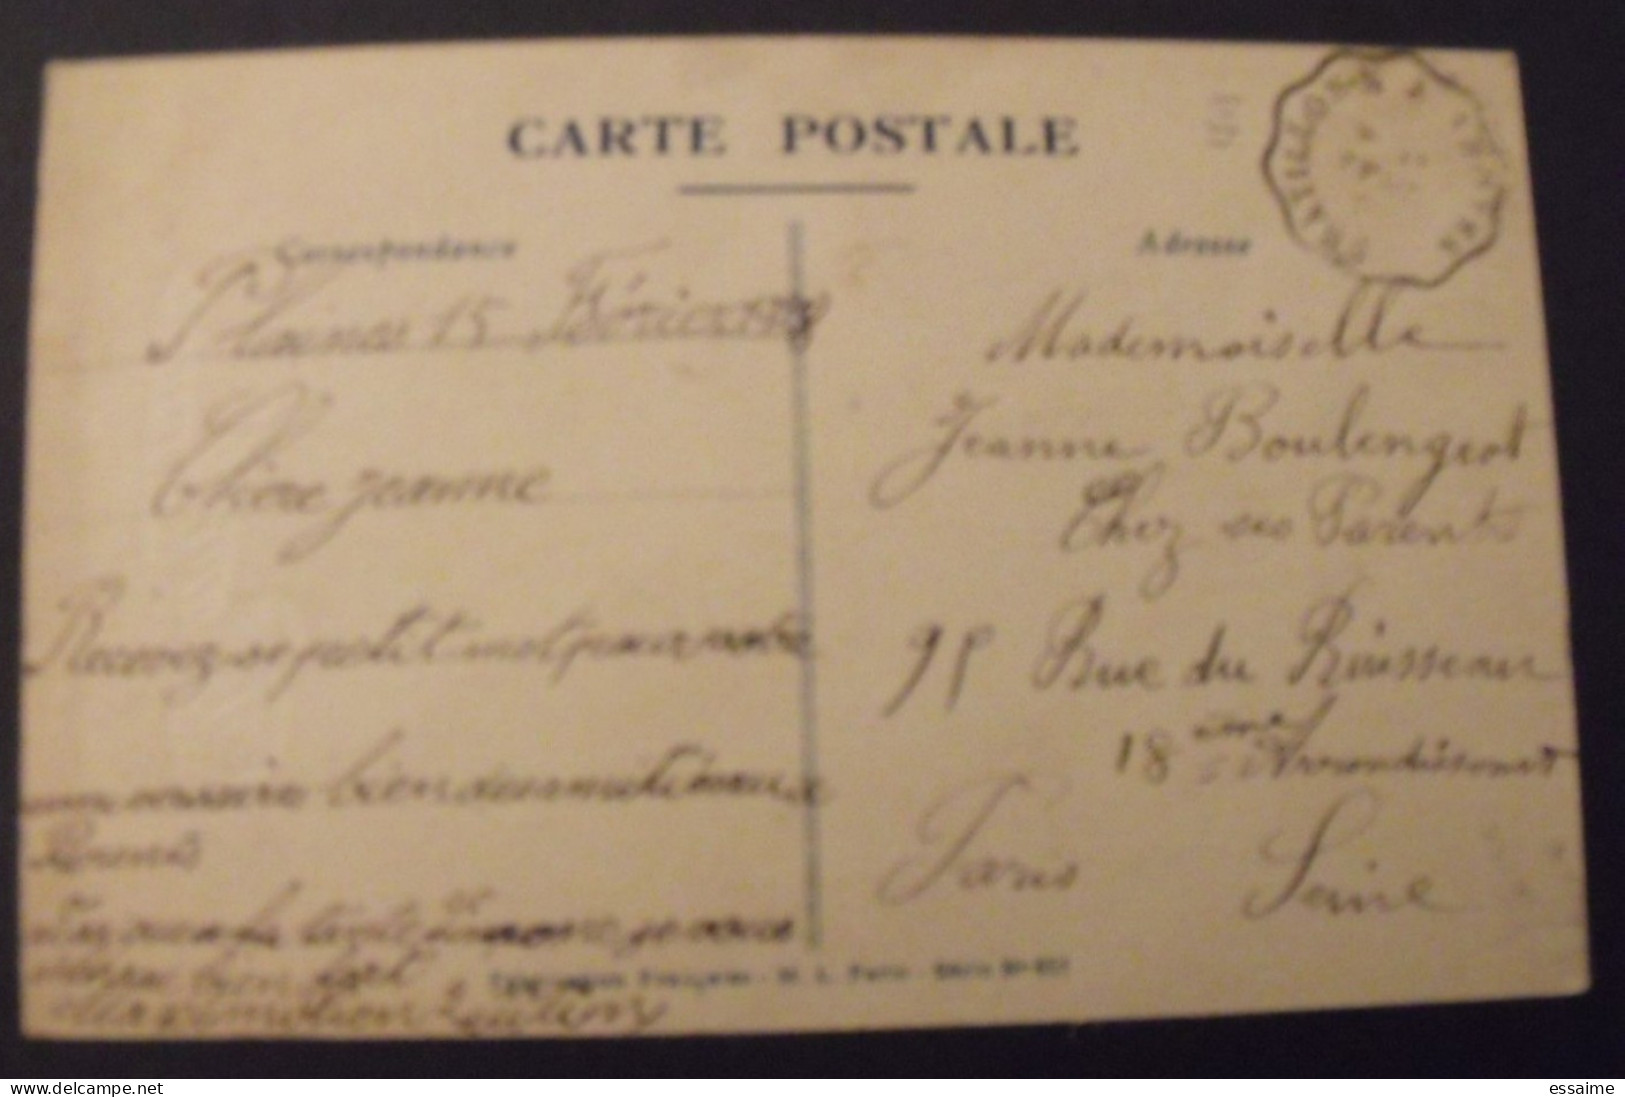 Carte Postale Fleurs + Timbre Pub Publicitaire Semeuse 199. Evian. Publicité Carnet Réclame. - Covers & Documents